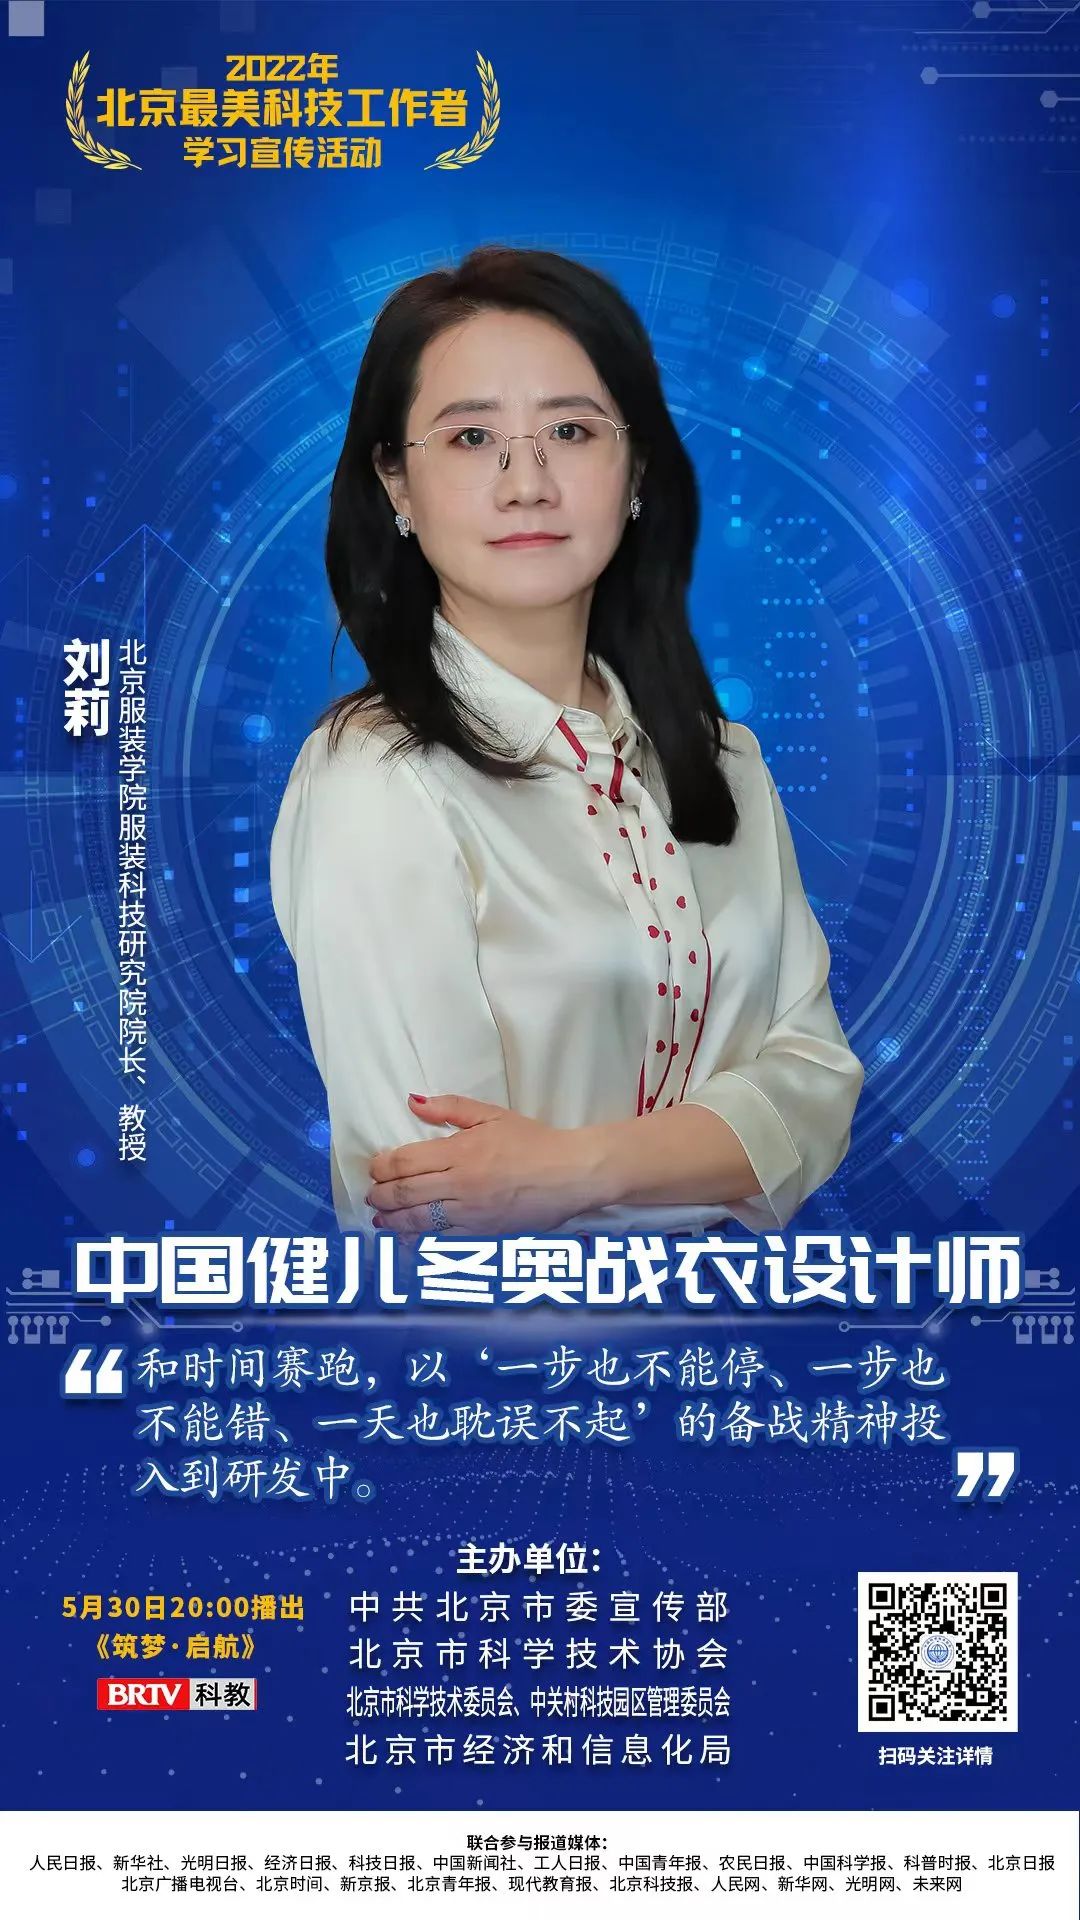 全国科技工作者日|北京“最美科技工作者”刘莉带您了解竞技体育中的纺织科学